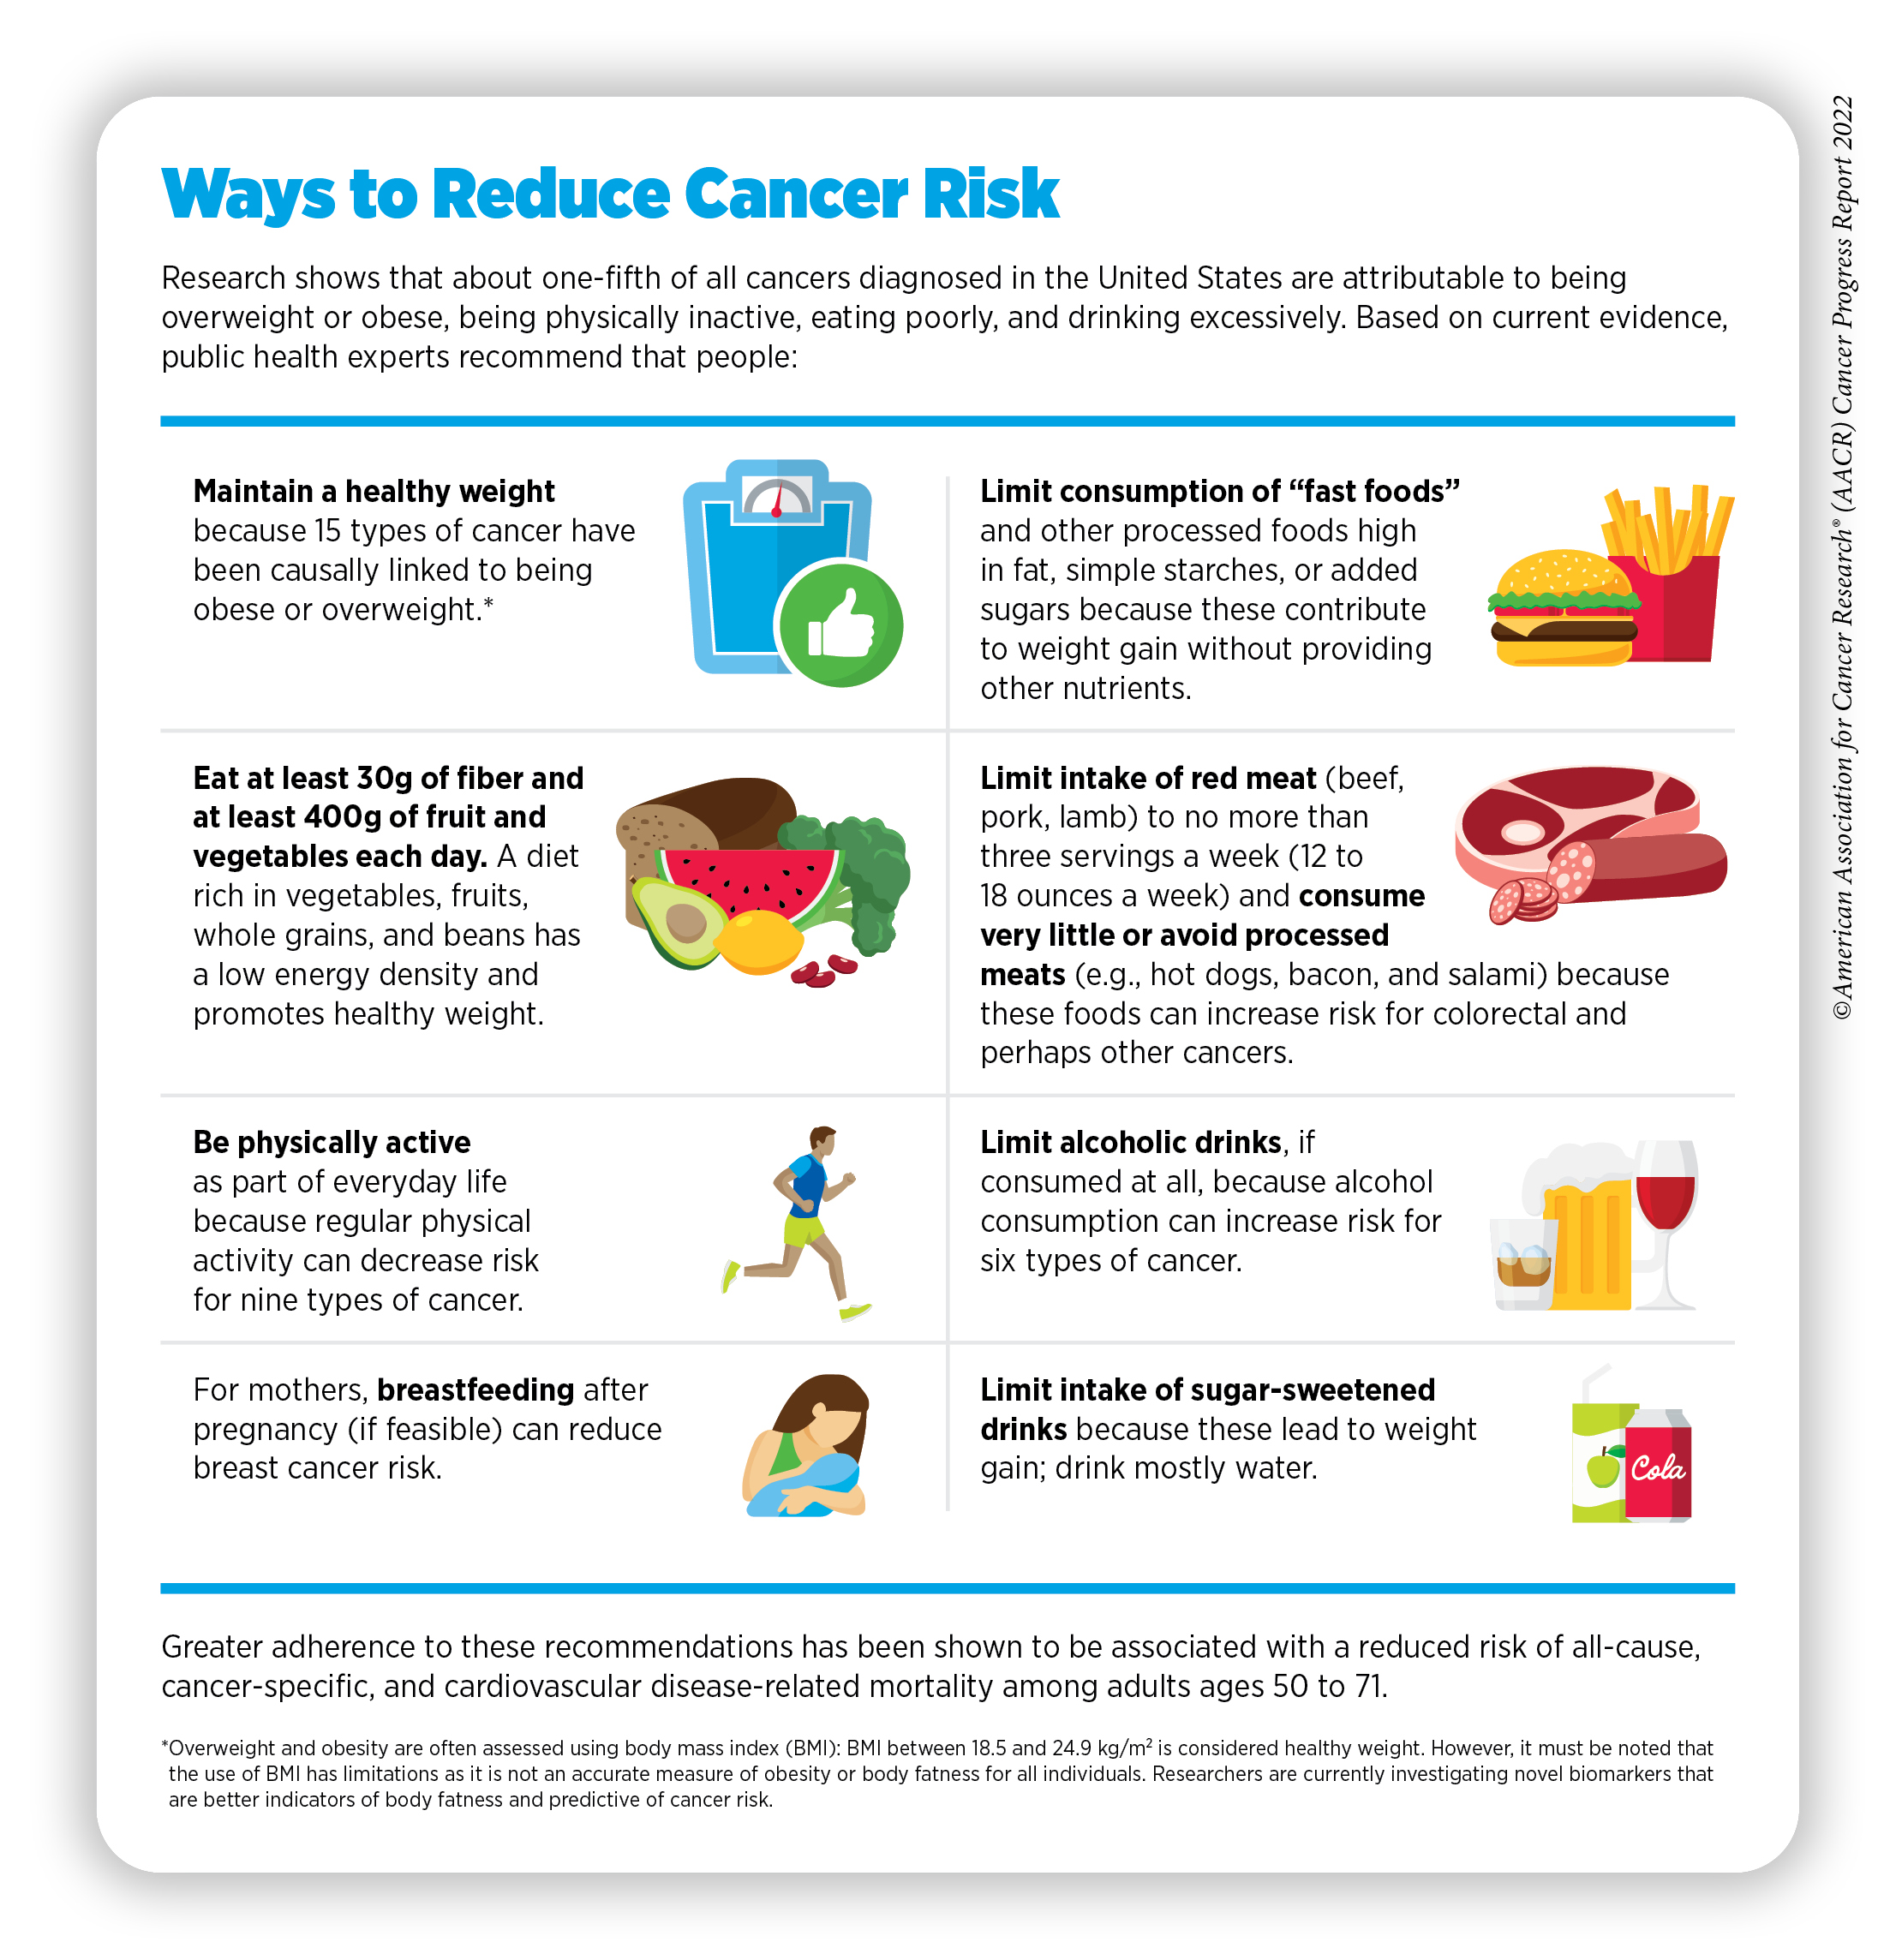 Carcinogenic prevention methods